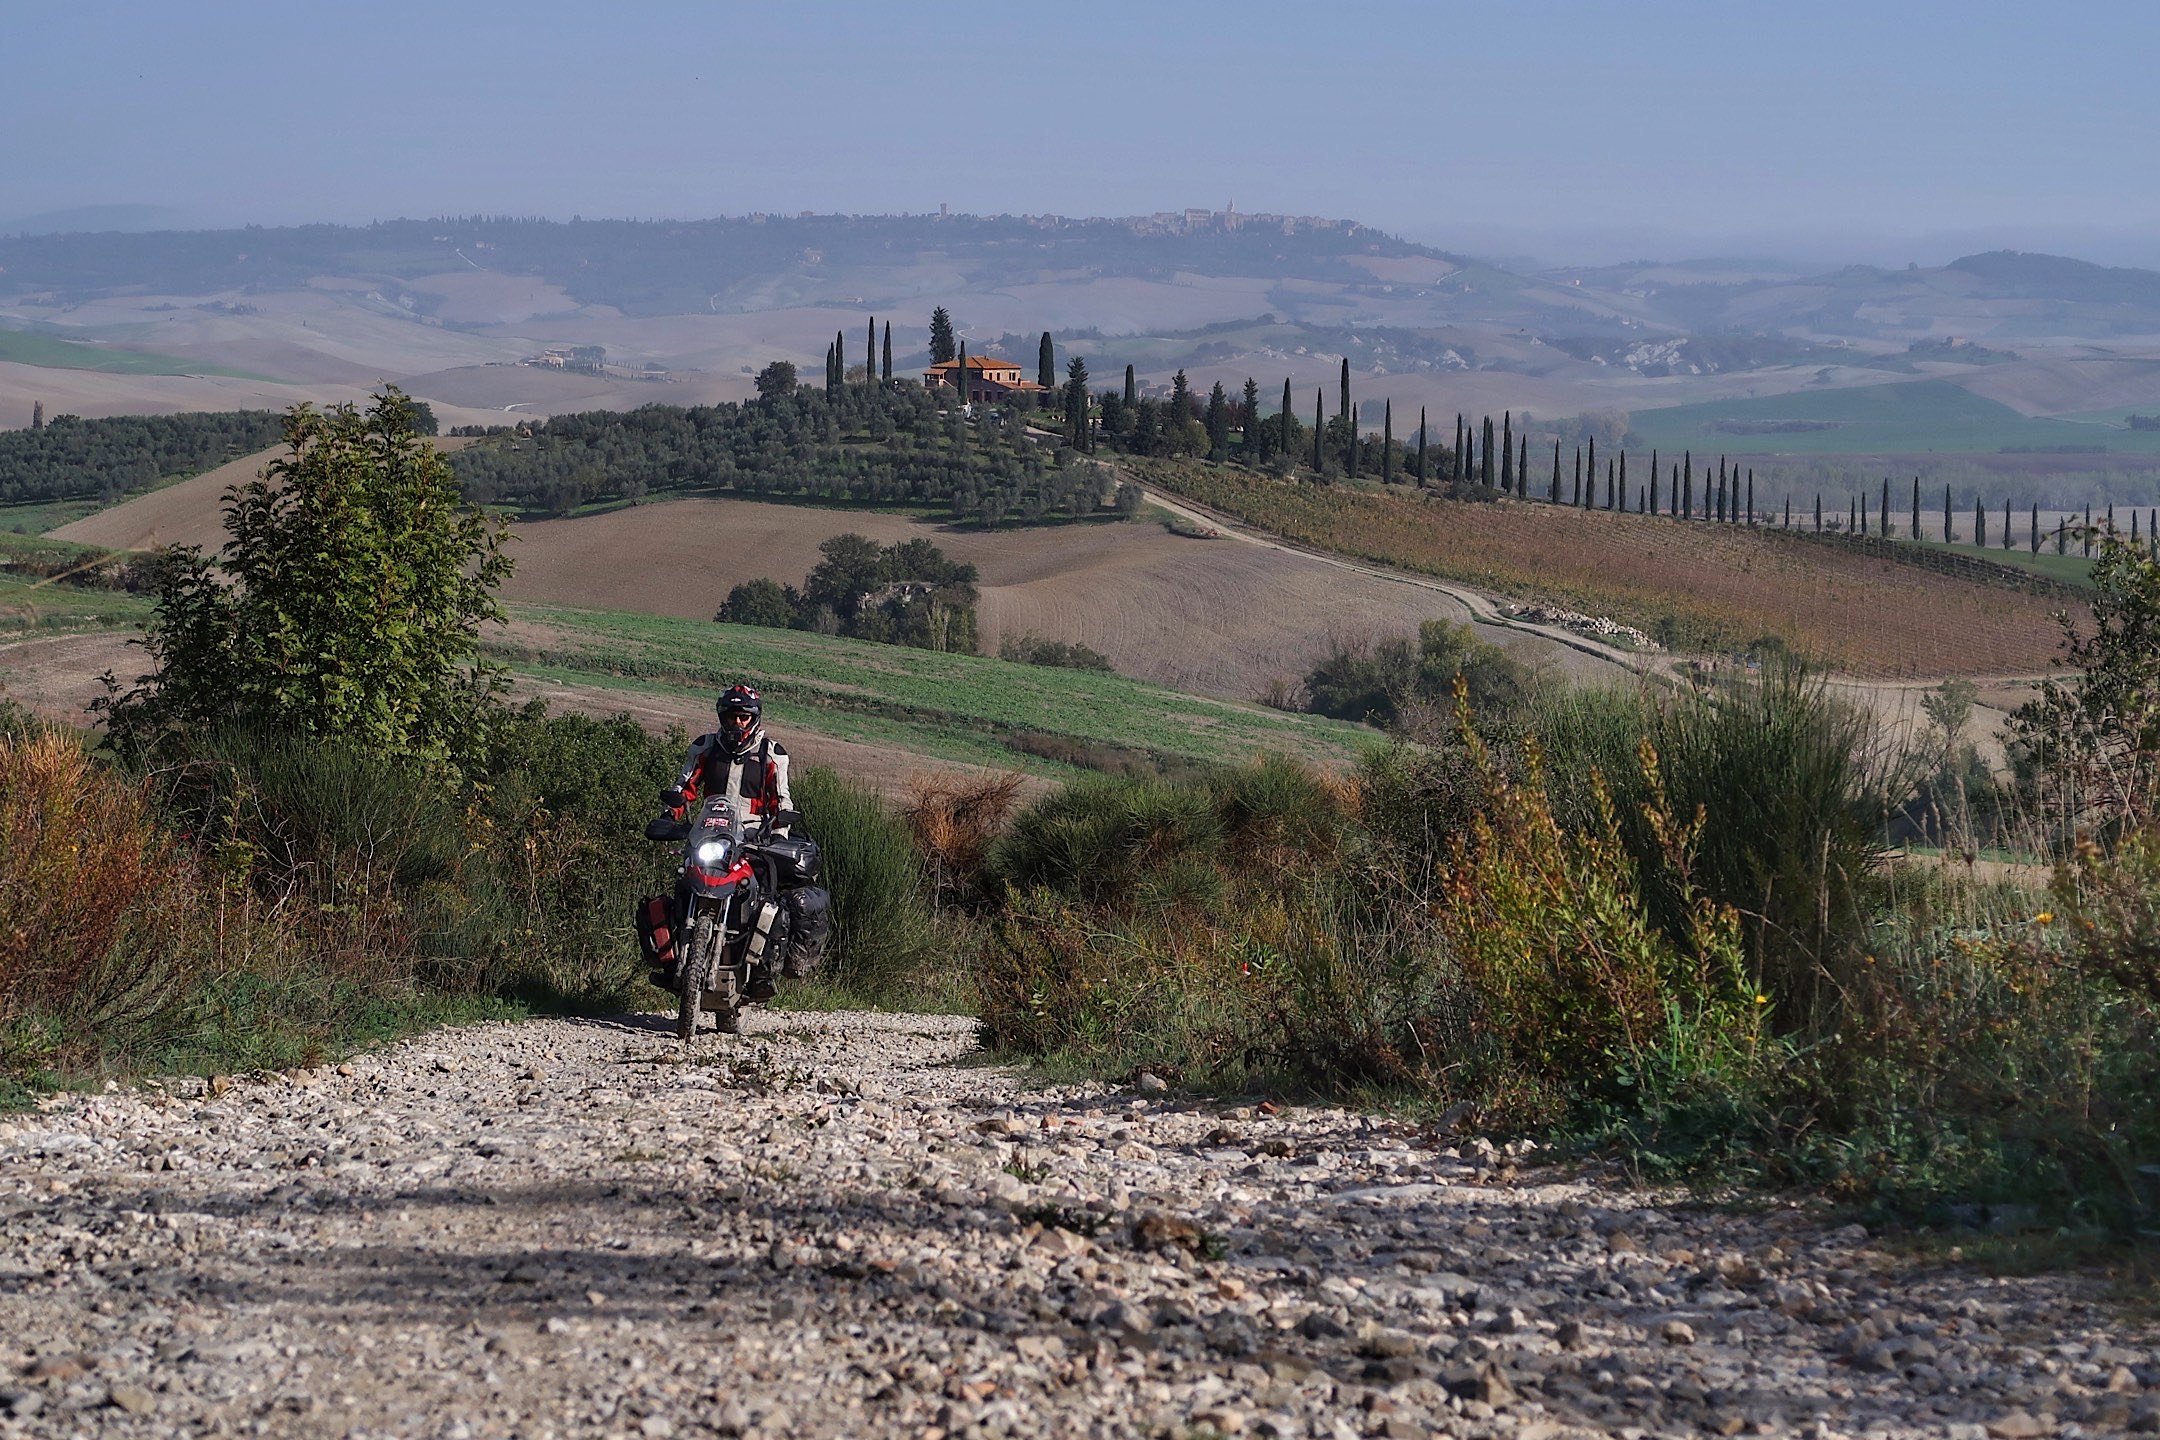  Motorcycle on trail overlooking European village. 